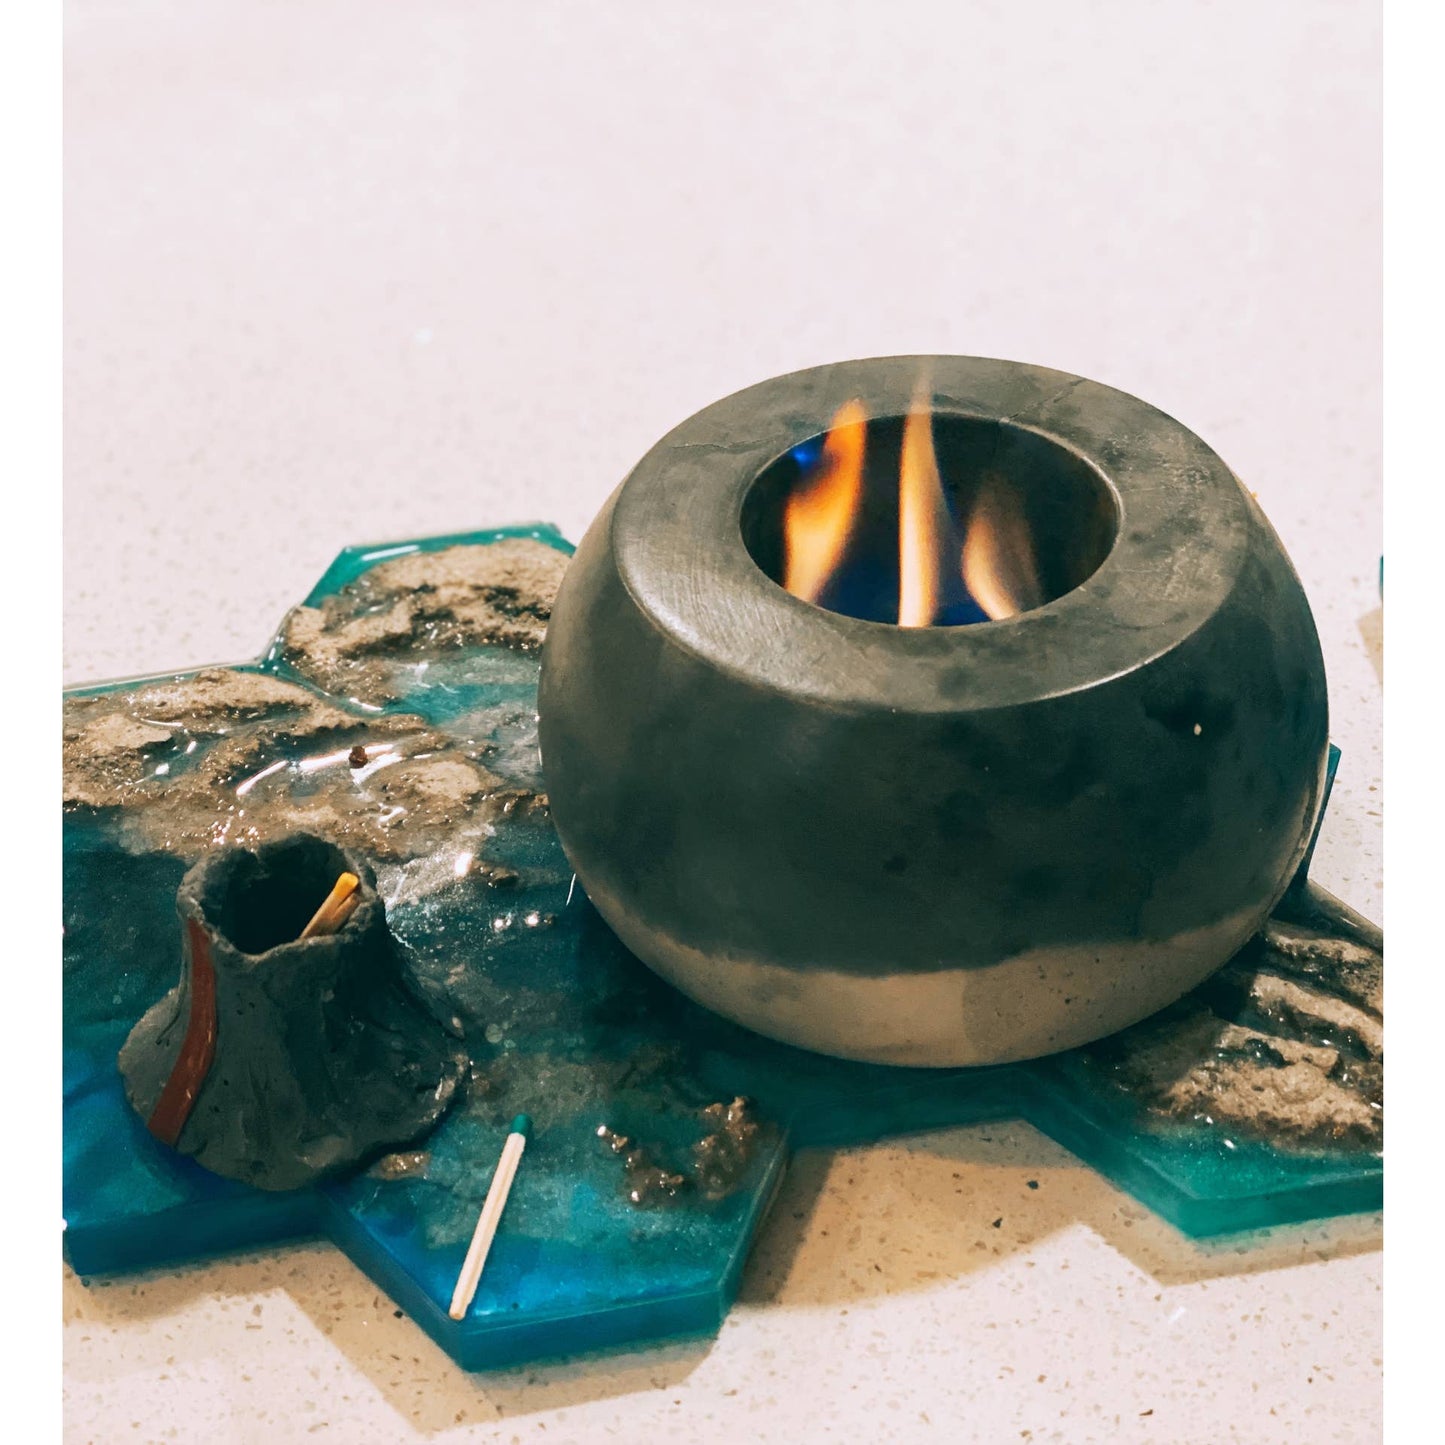 Ceramic Fire Bowl